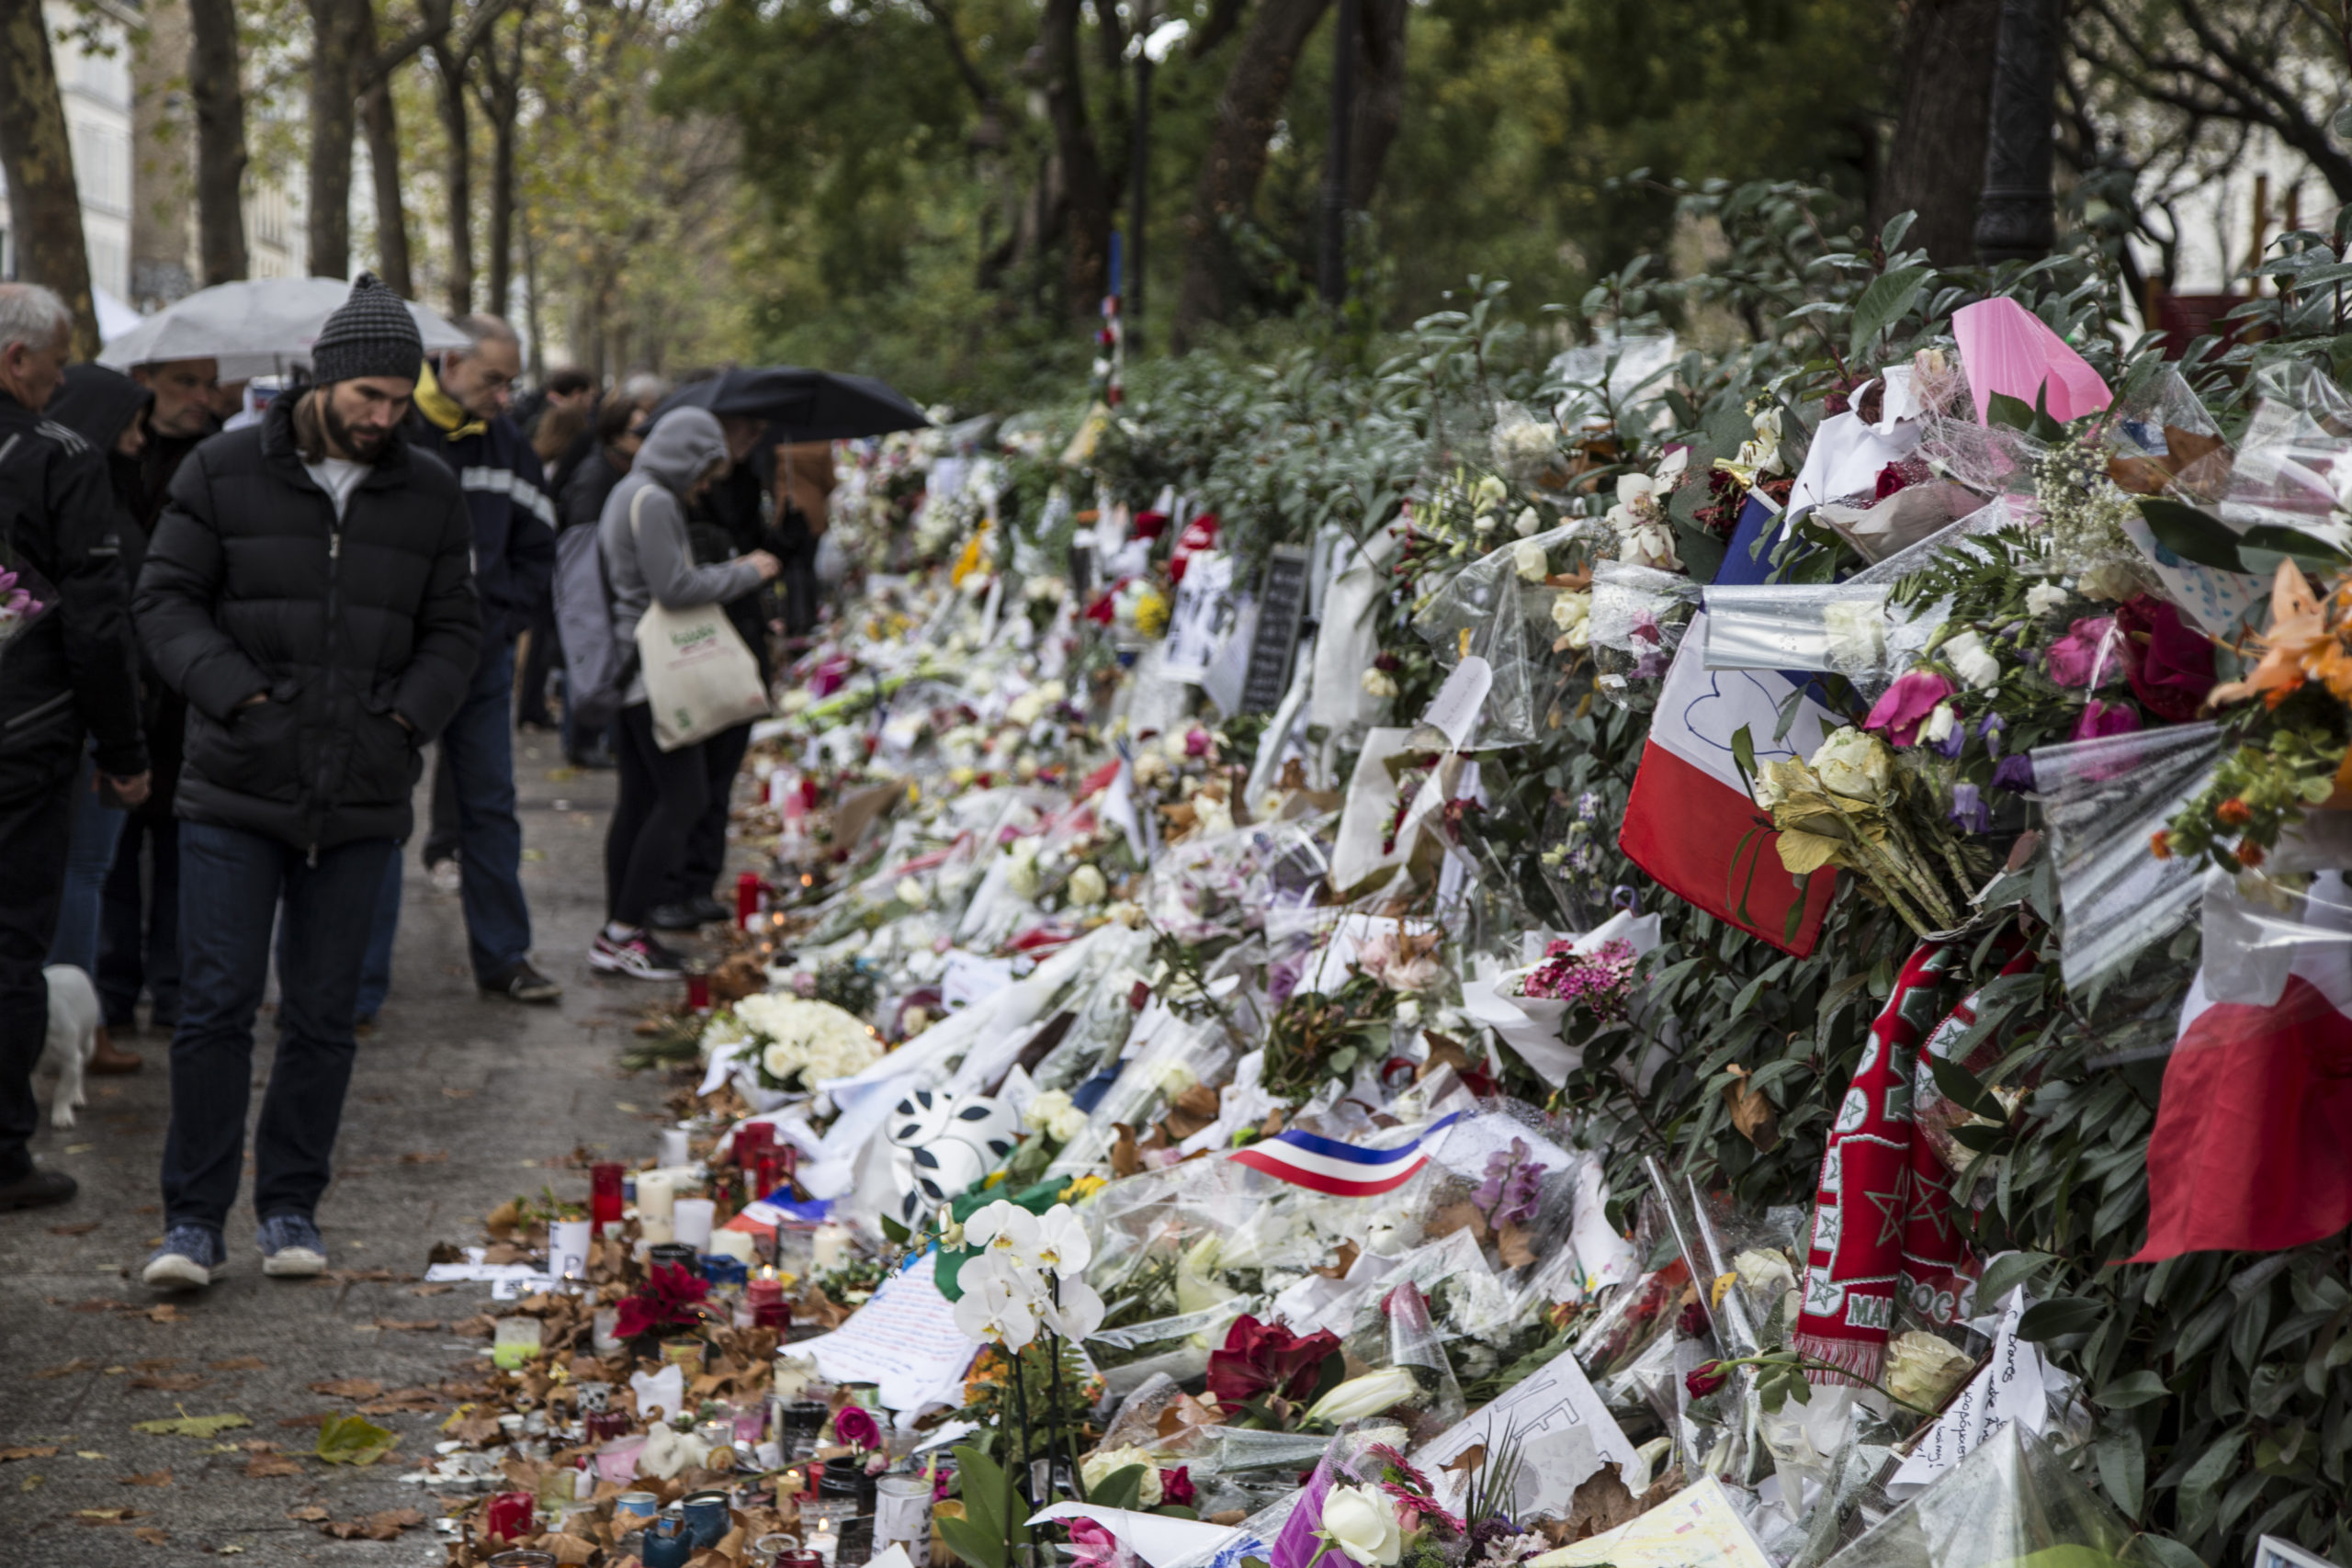 Lys, tegninger, flagg og blomster til minne om terrorofrene etter angrepene i Paris. Personer ser på.